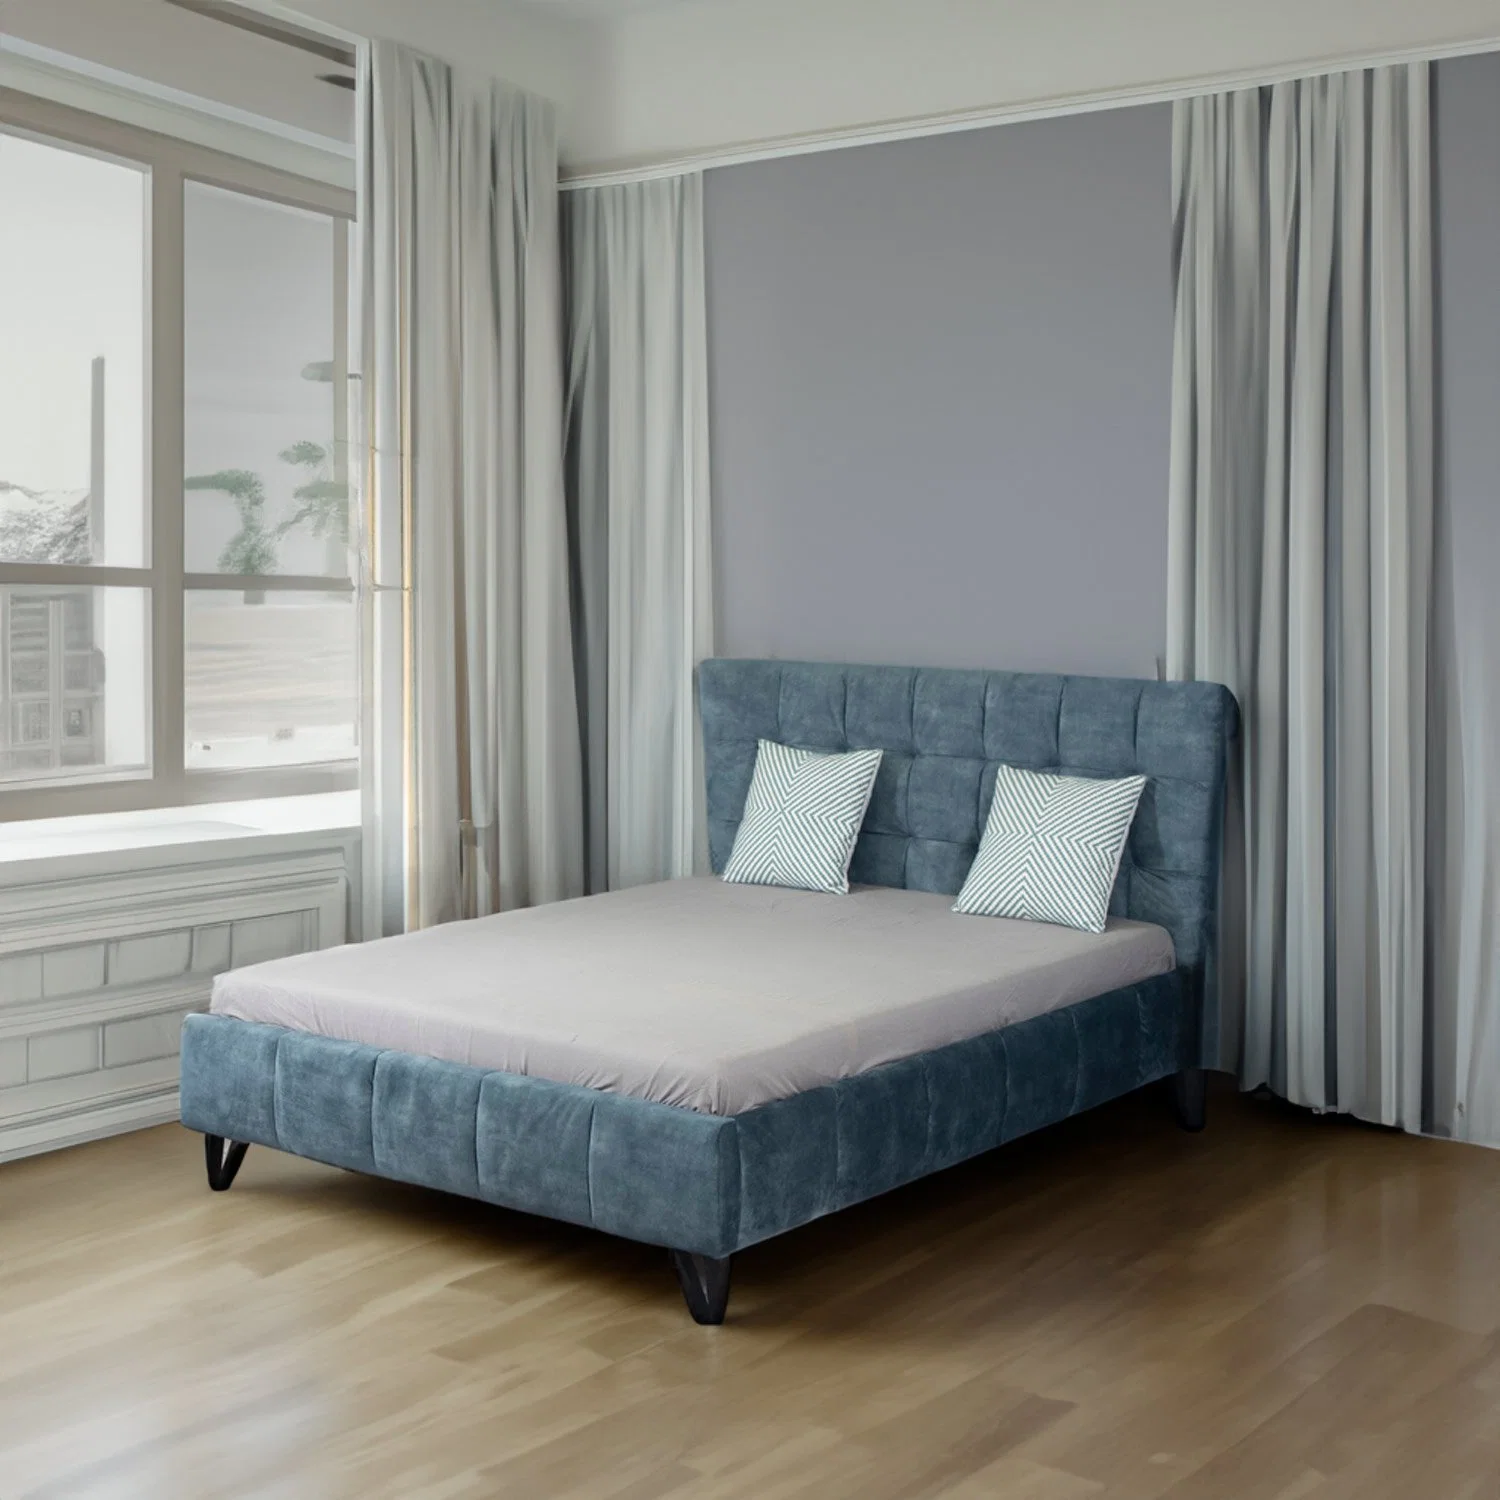 Huayang OEM personalizar dormitorio matrimonial Home Salón cama de lujo muebles modernos.